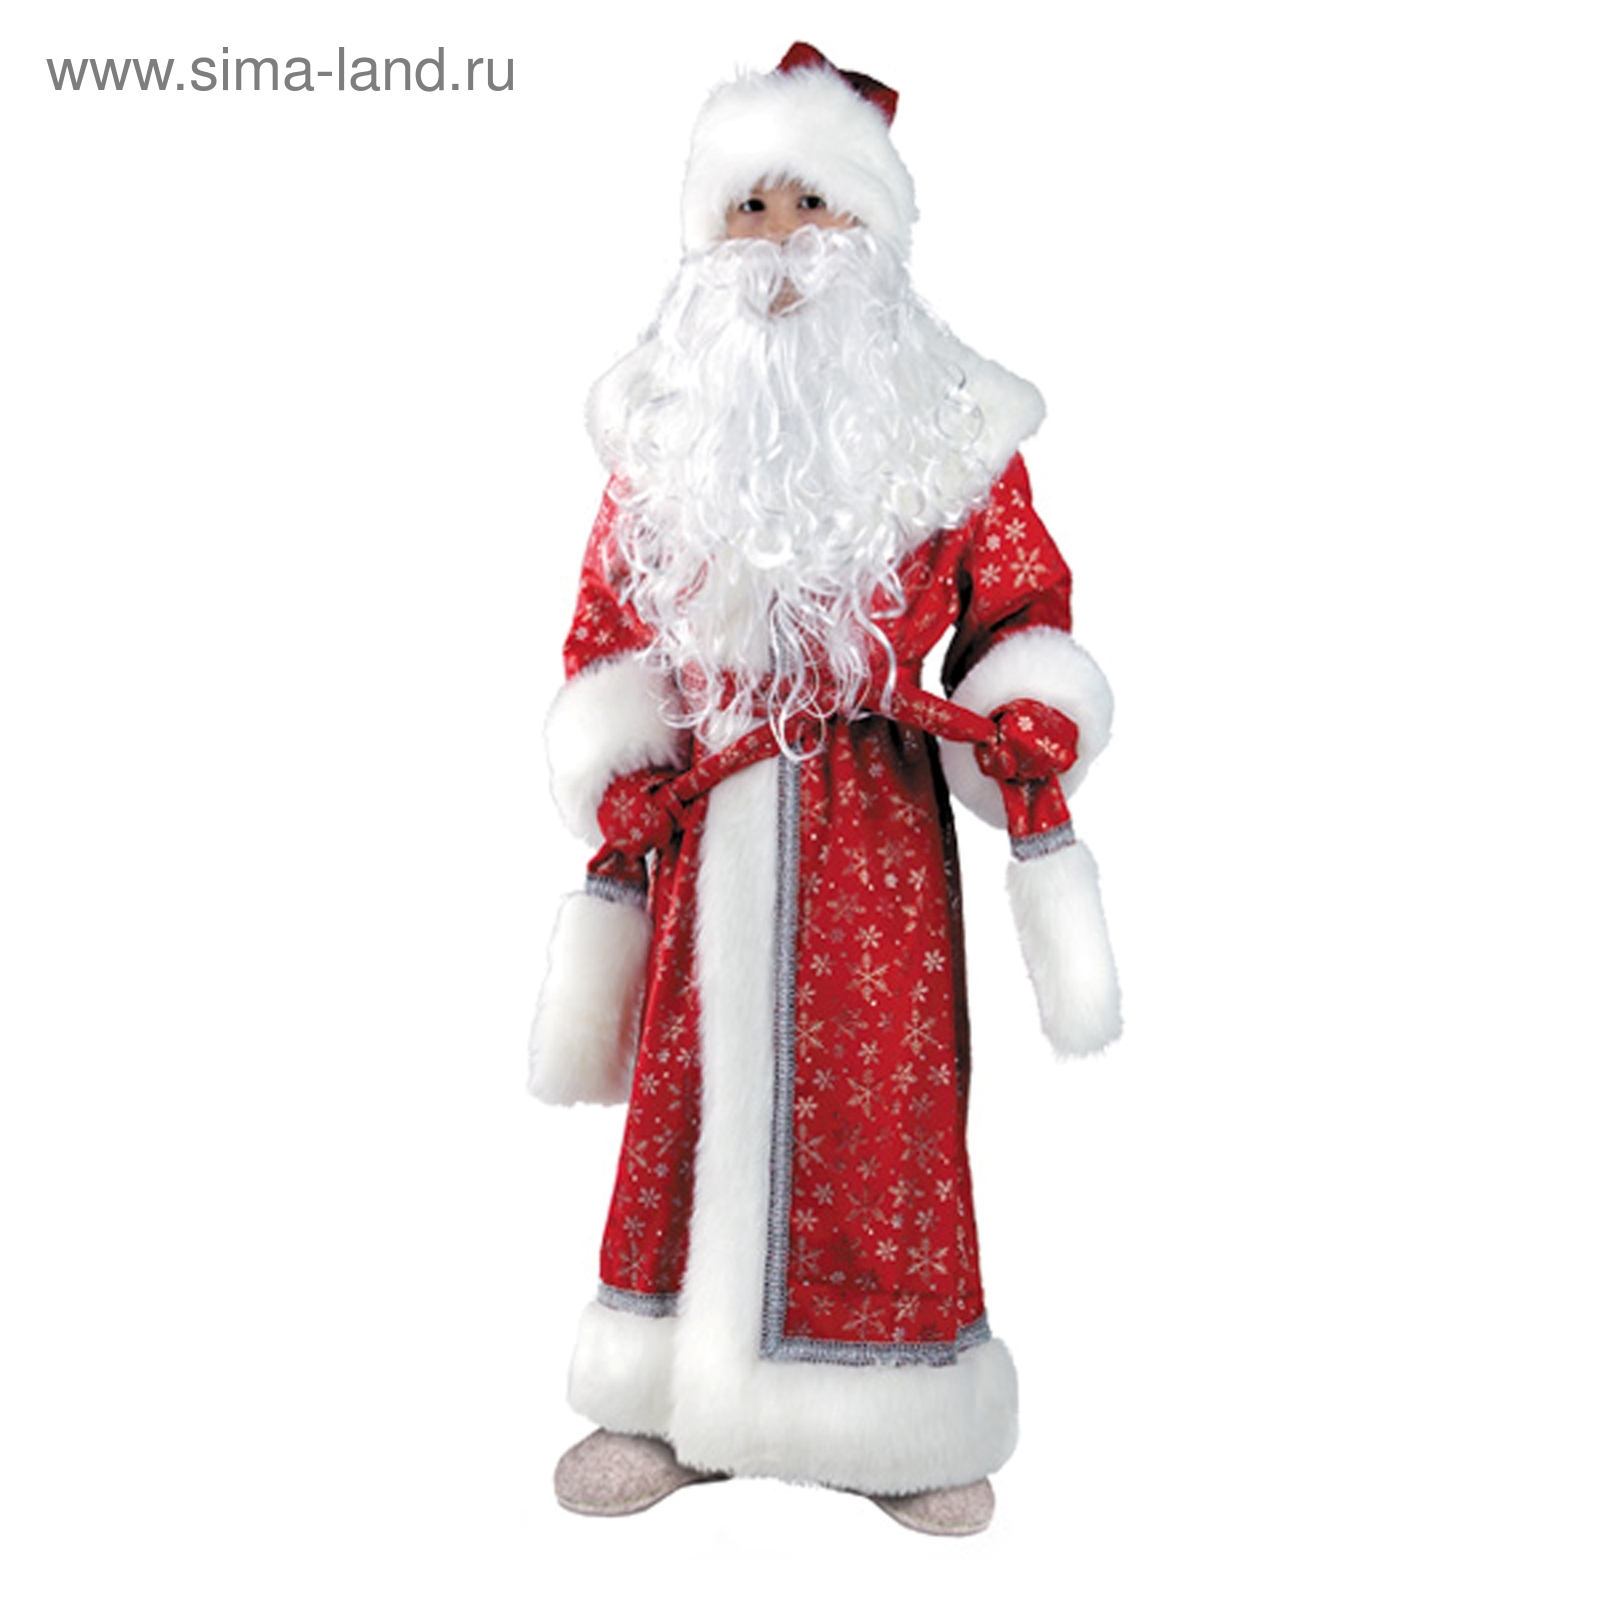 Новогодний костюм: как угодить ребенку и не напугать Деда Мороза